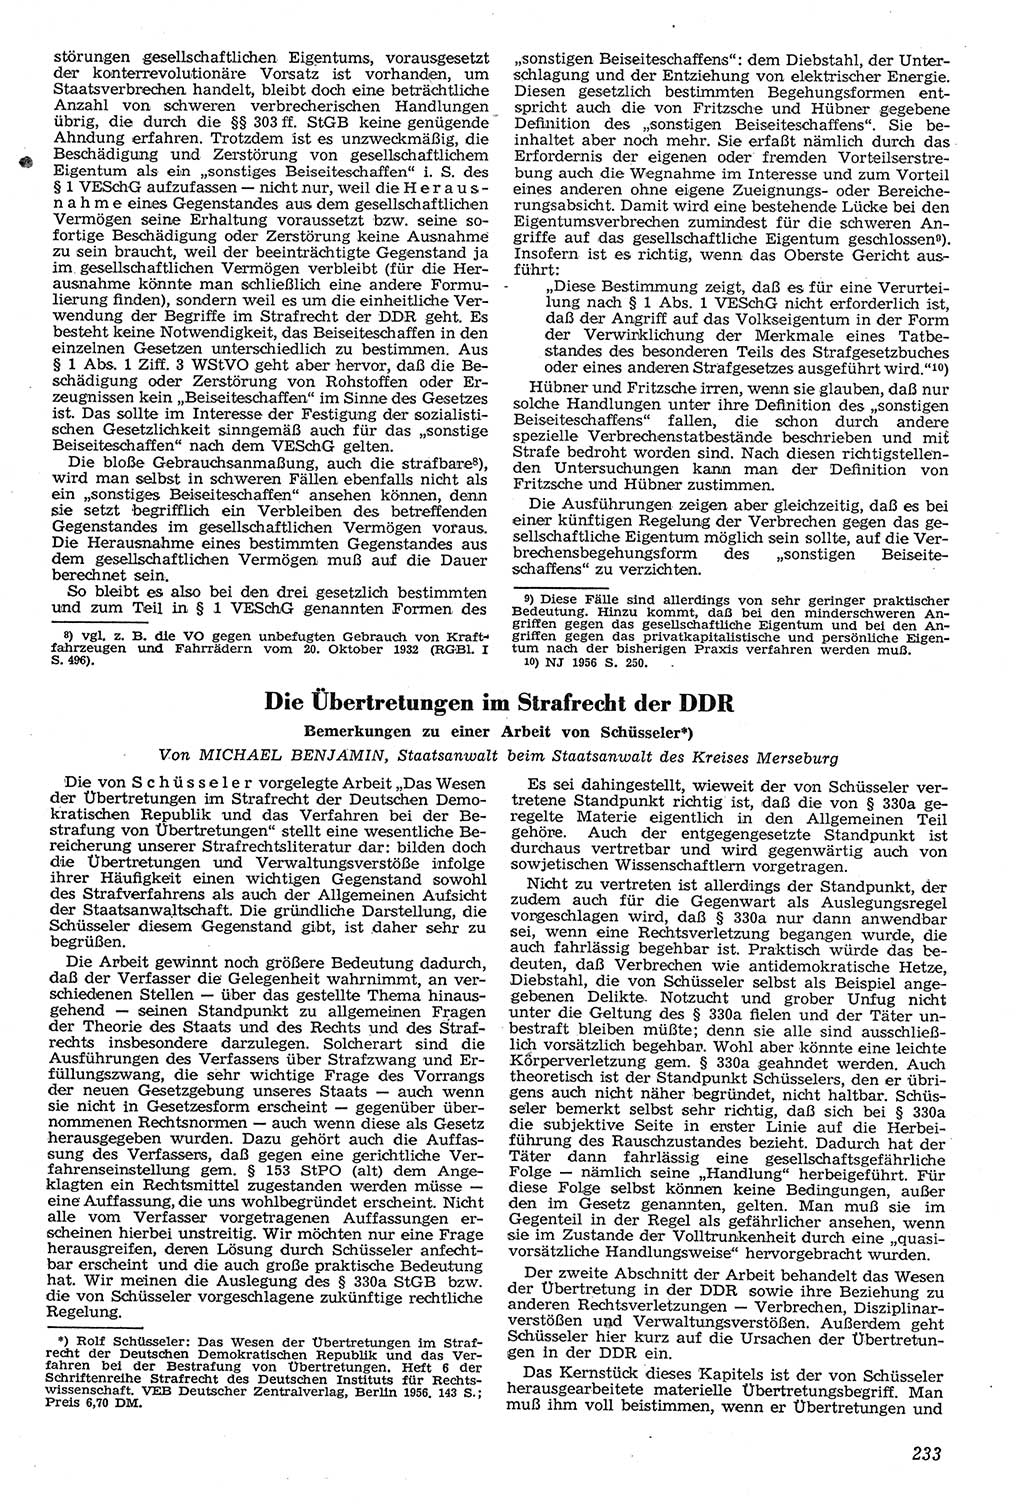 Neue Justiz (NJ), Zeitschrift für Recht und Rechtswissenschaft [Deutsche Demokratische Republik (DDR)], 11. Jahrgang 1957, Seite 233 (NJ DDR 1957, S. 233)